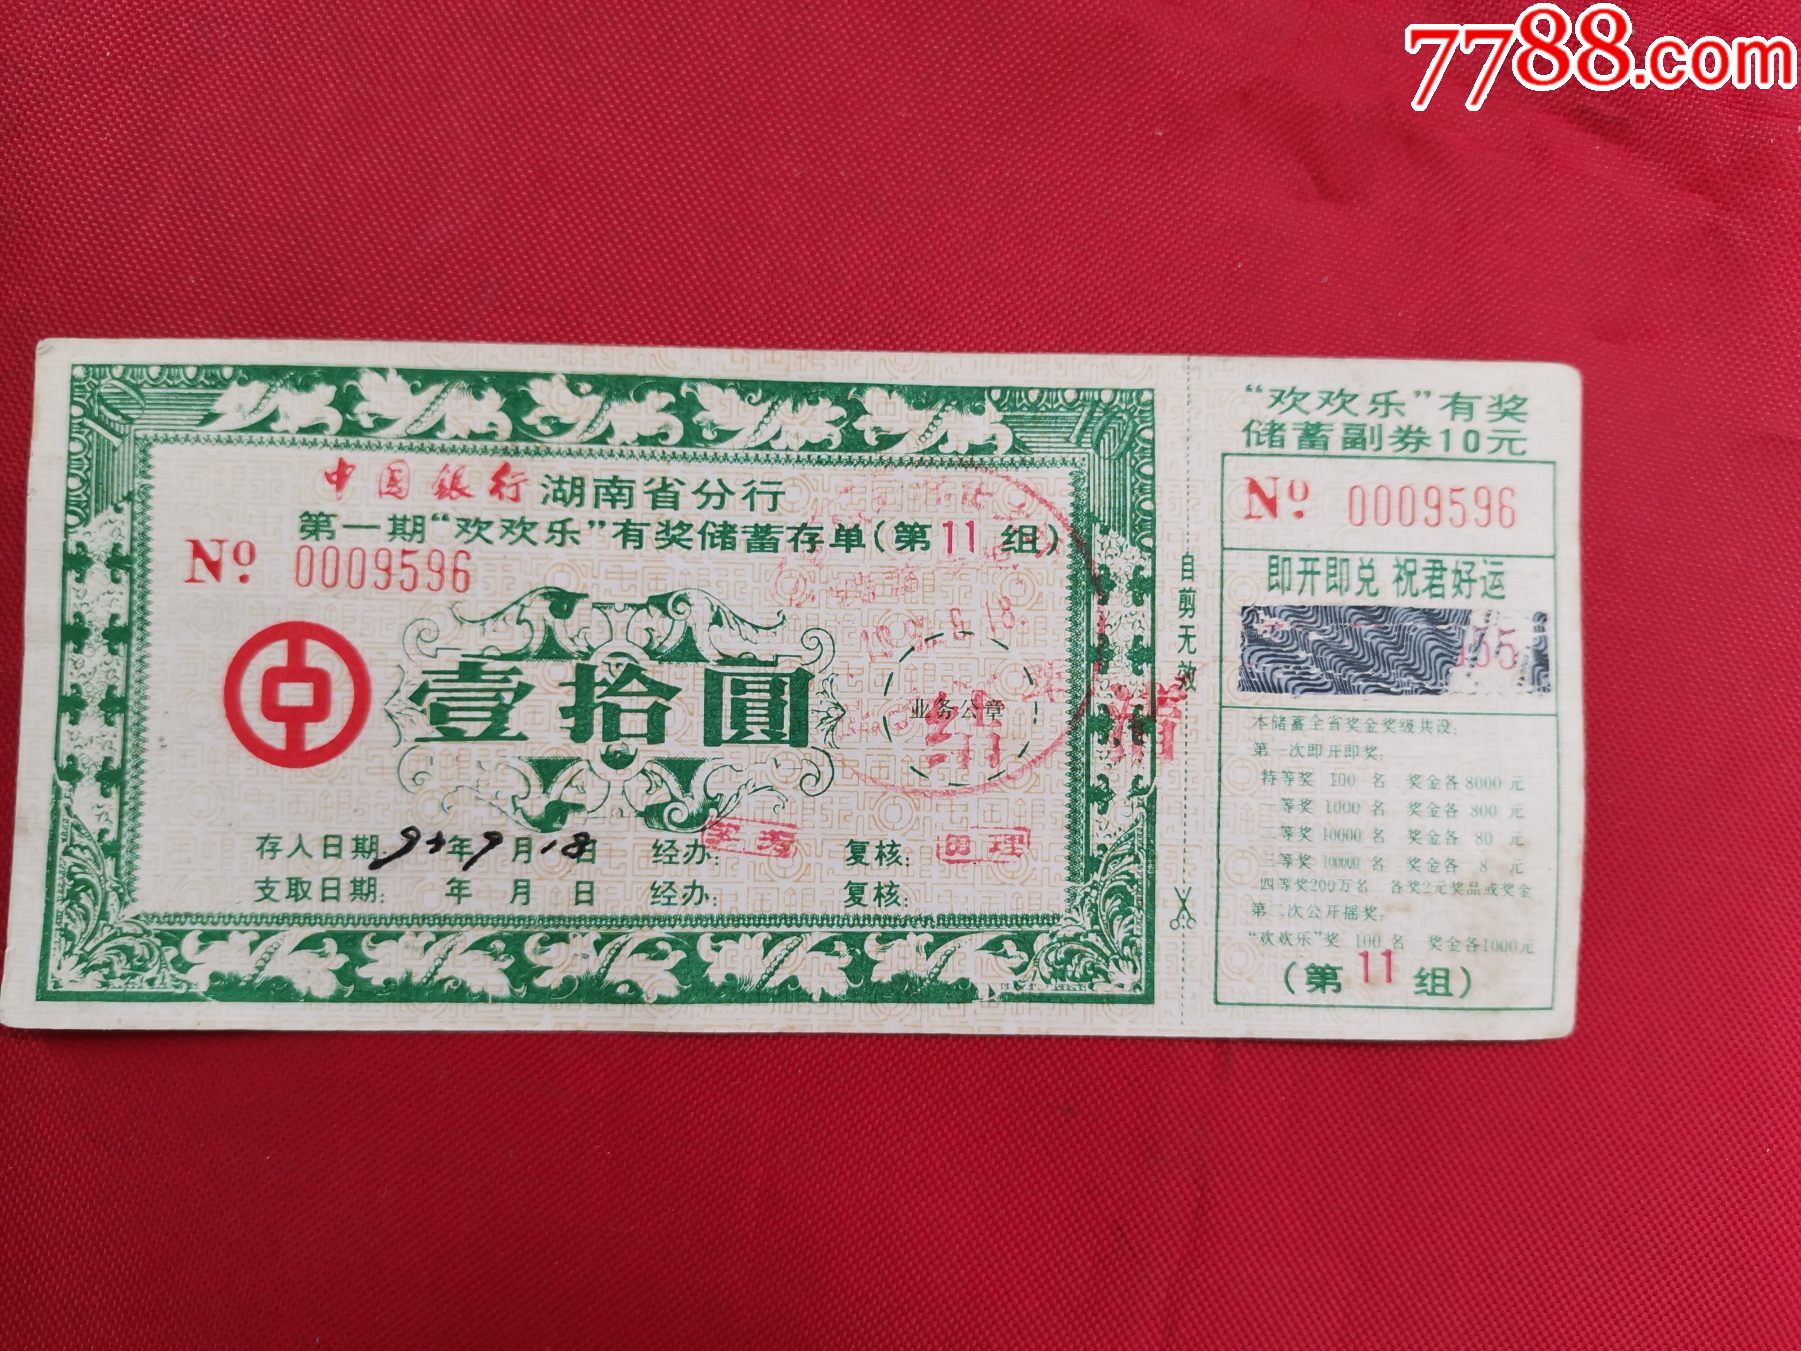 1993年中国银行湖南省分行第一期欢欢乐有奖储蓄存单